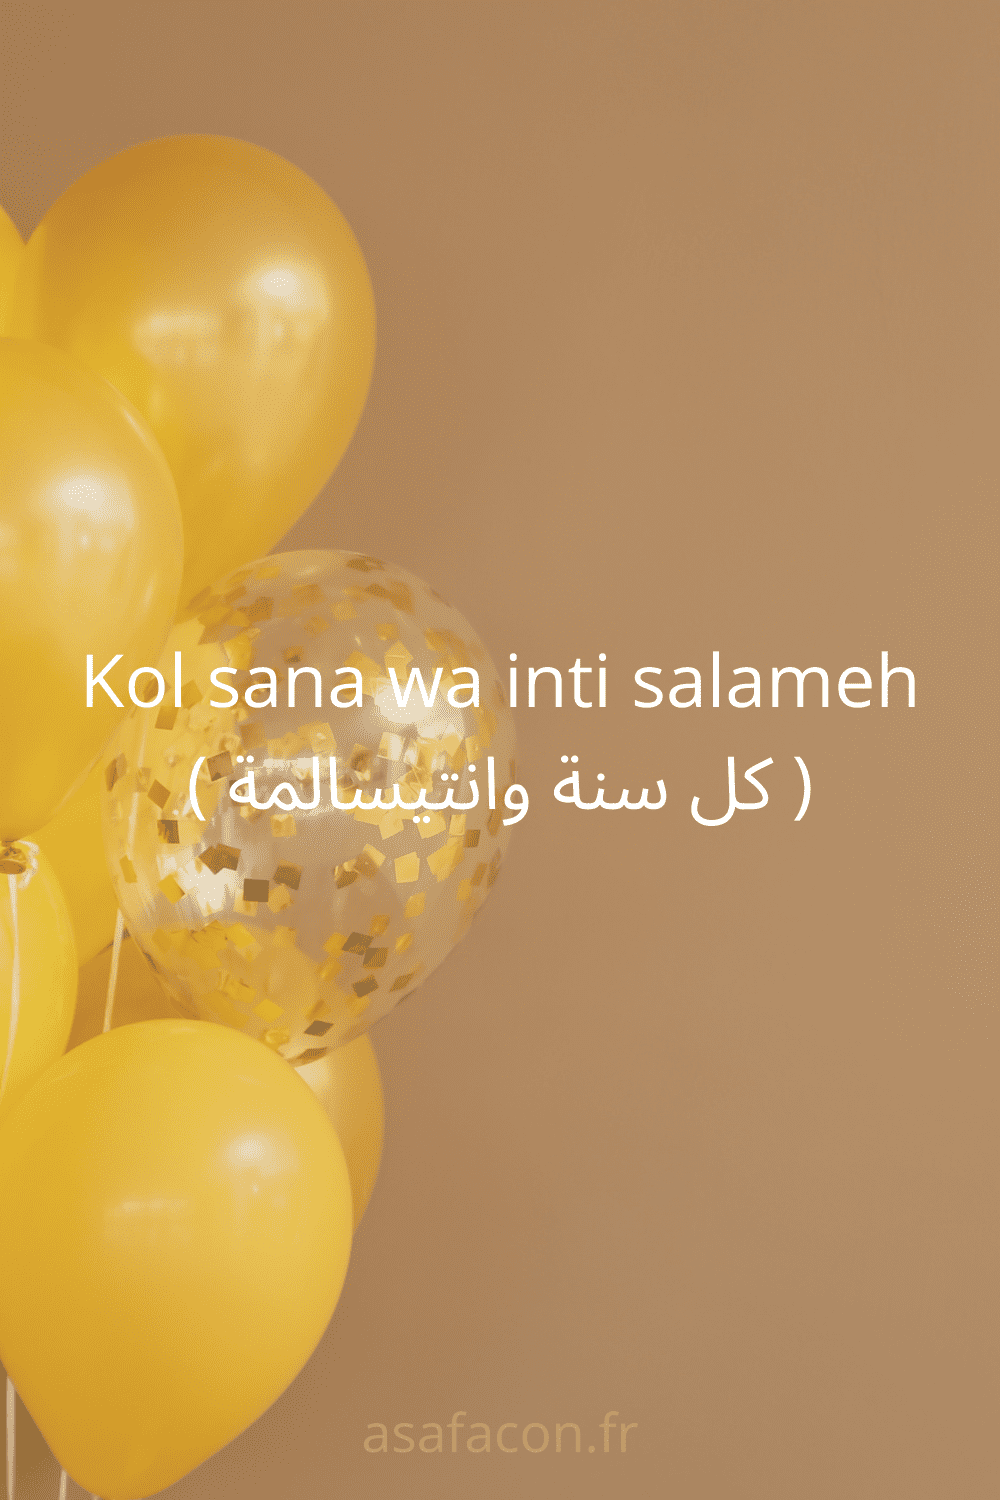 Kol sana wa inti salameh ( كل سنة وانتیسالمة ).